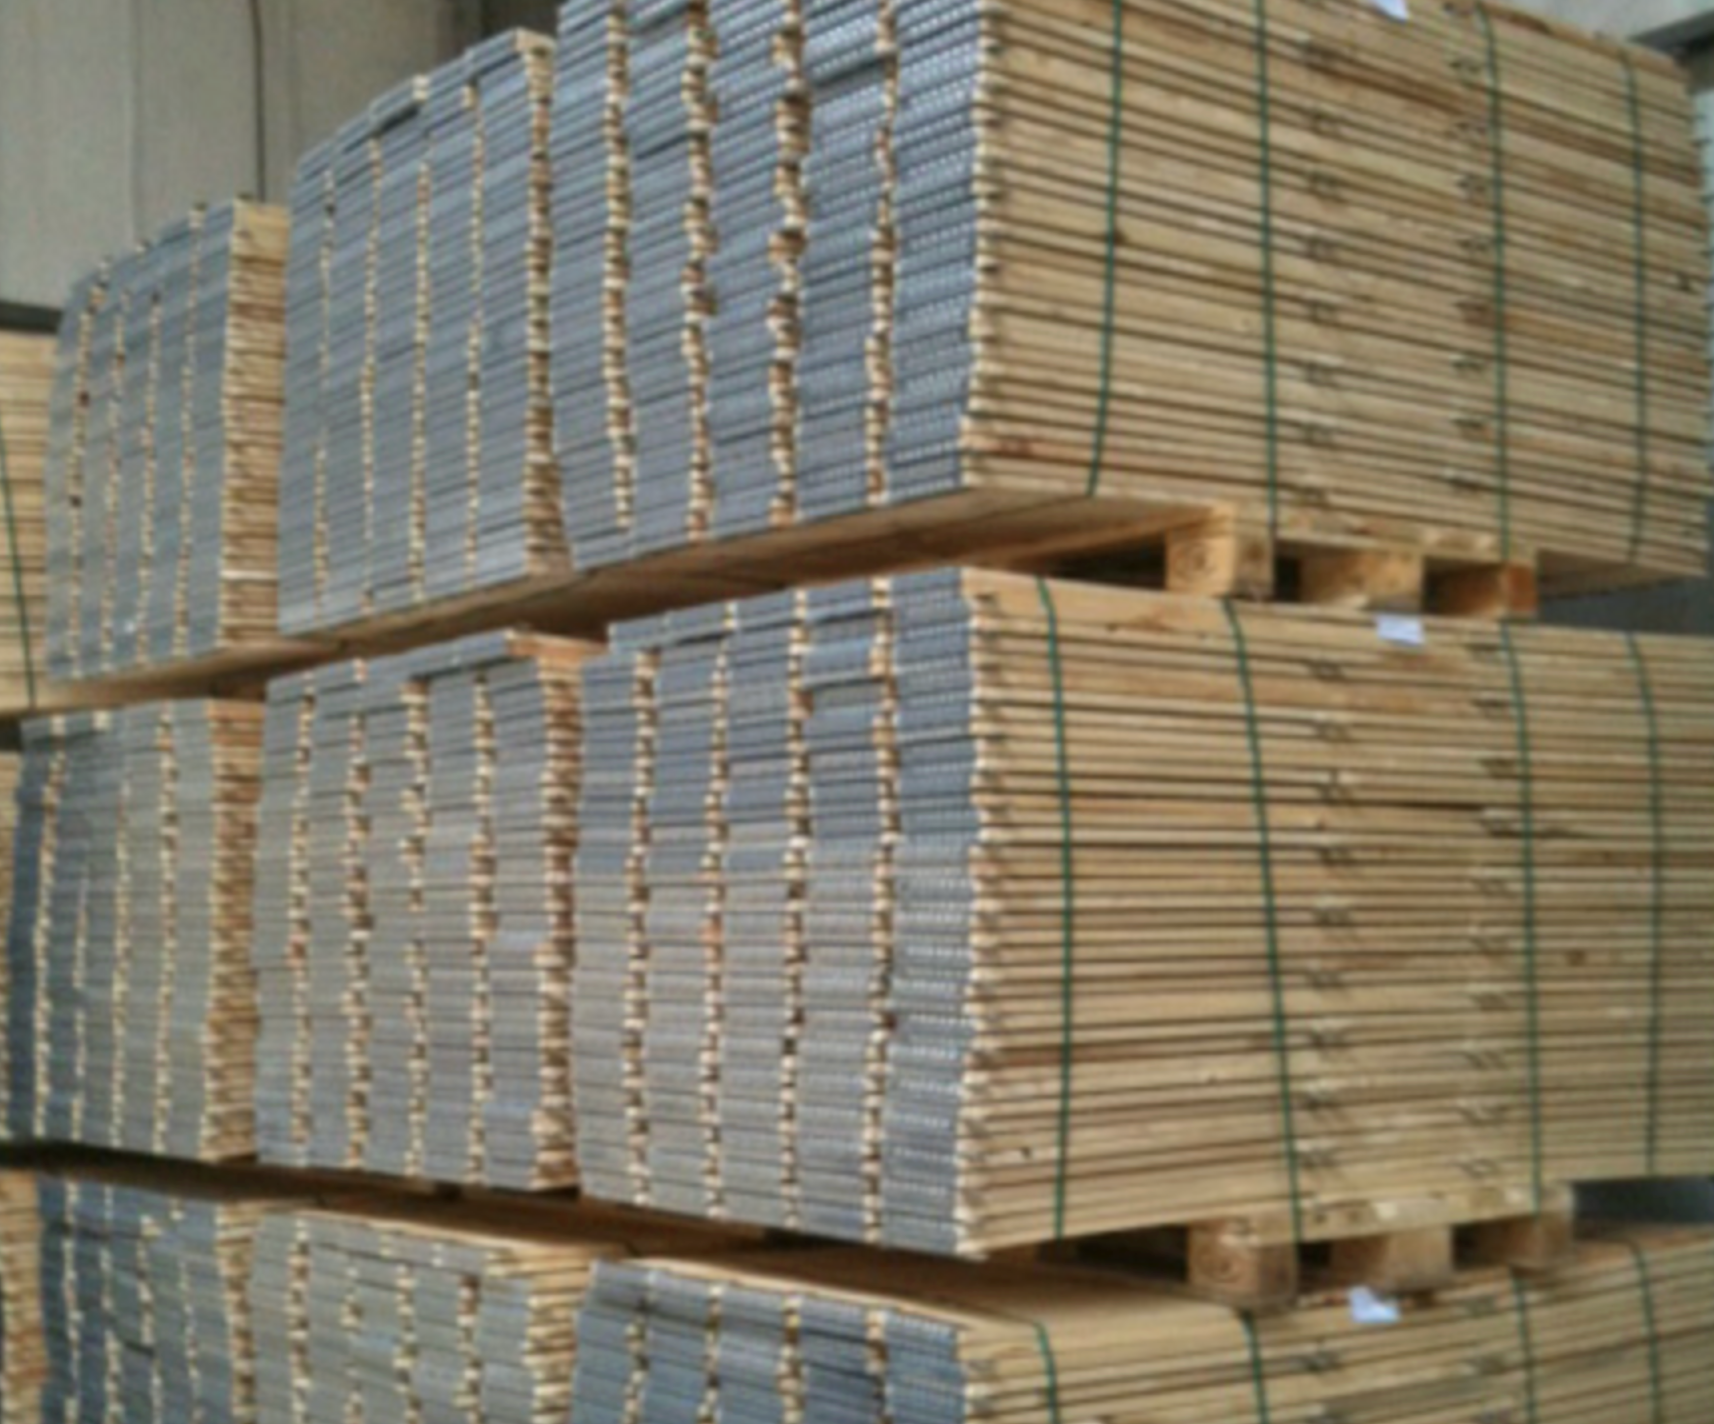 achetez une rehausse de palette en ligne au Canada fabriquee localement vente service piece charniere planche reparation location